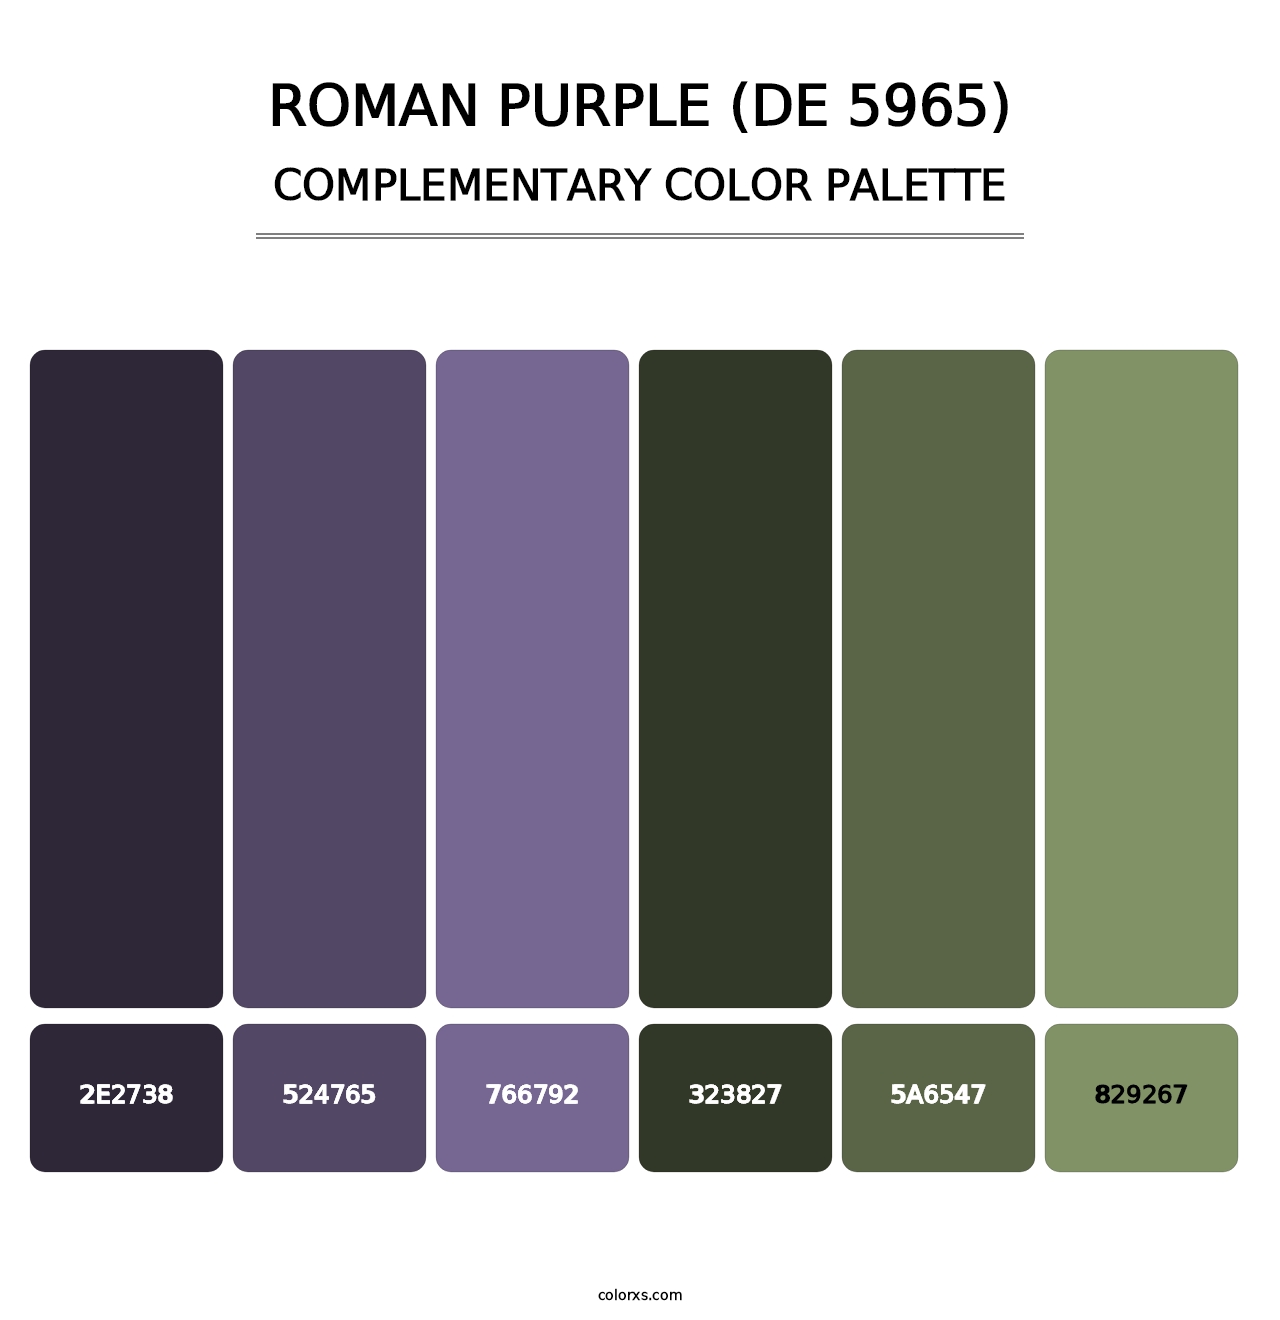 Roman Purple (DE 5965) - Complementary Color Palette